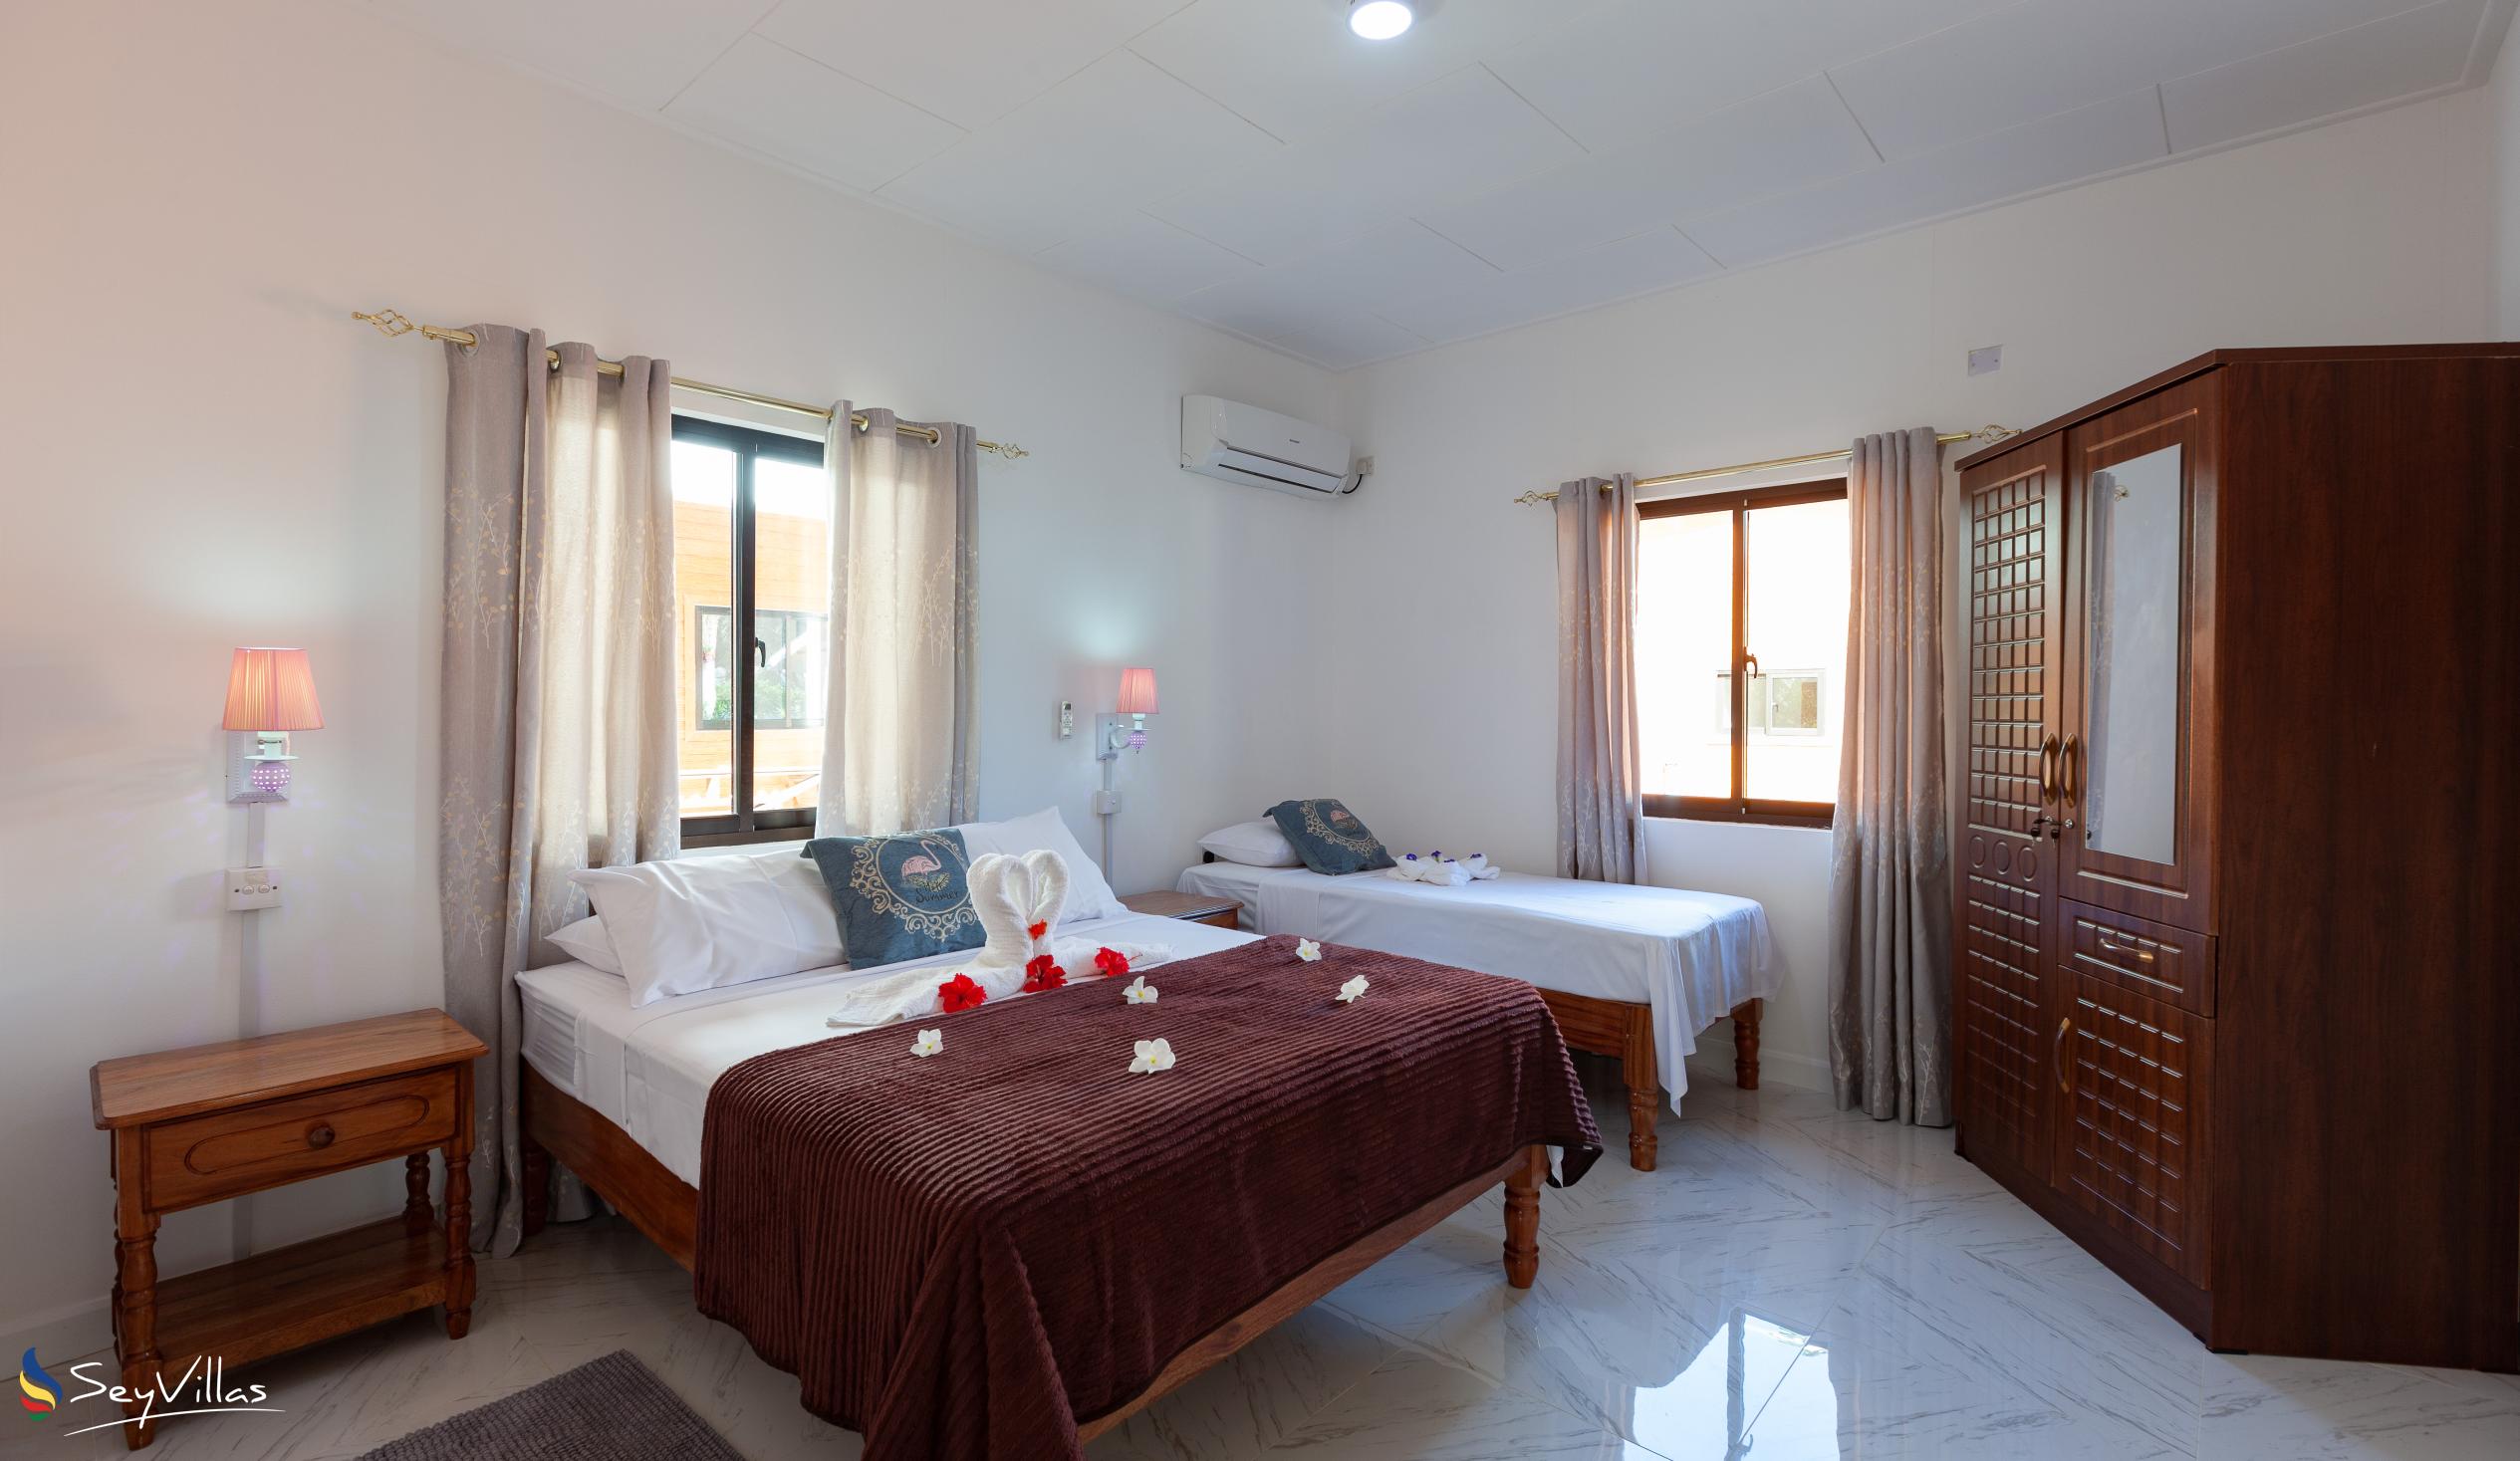 Foto 68: Anse Grosse Roche Beach Villa - Appartamento con 1 camera da letto - La Digue (Seychelles)